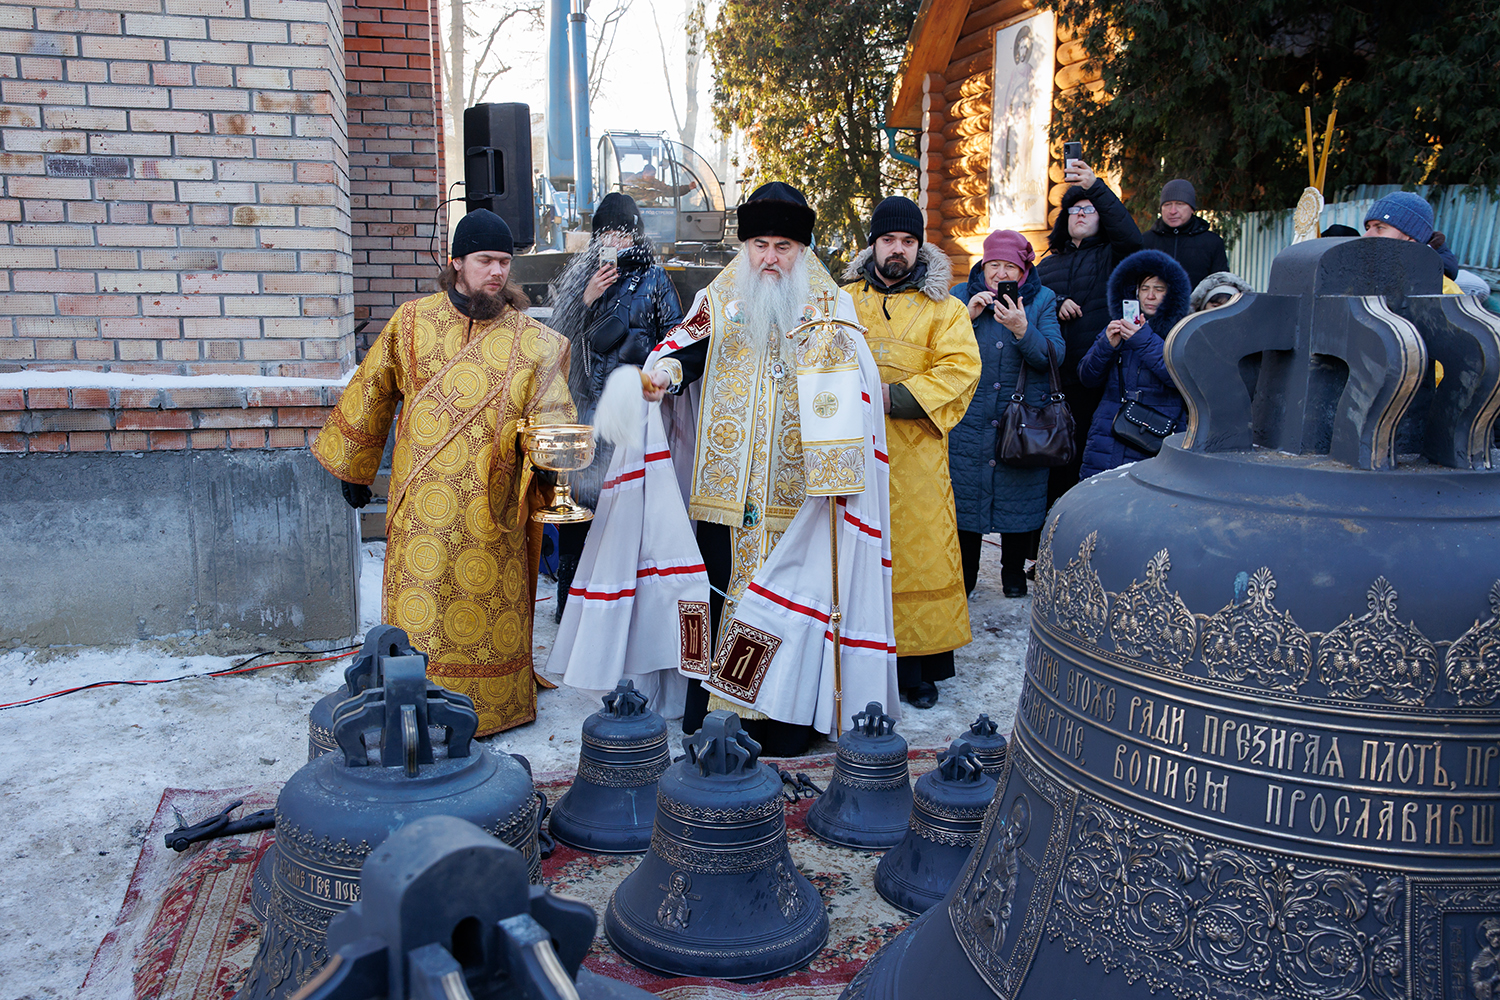 Вавилин, Харлов и Сафронов помогли купить колокола для храма Невского